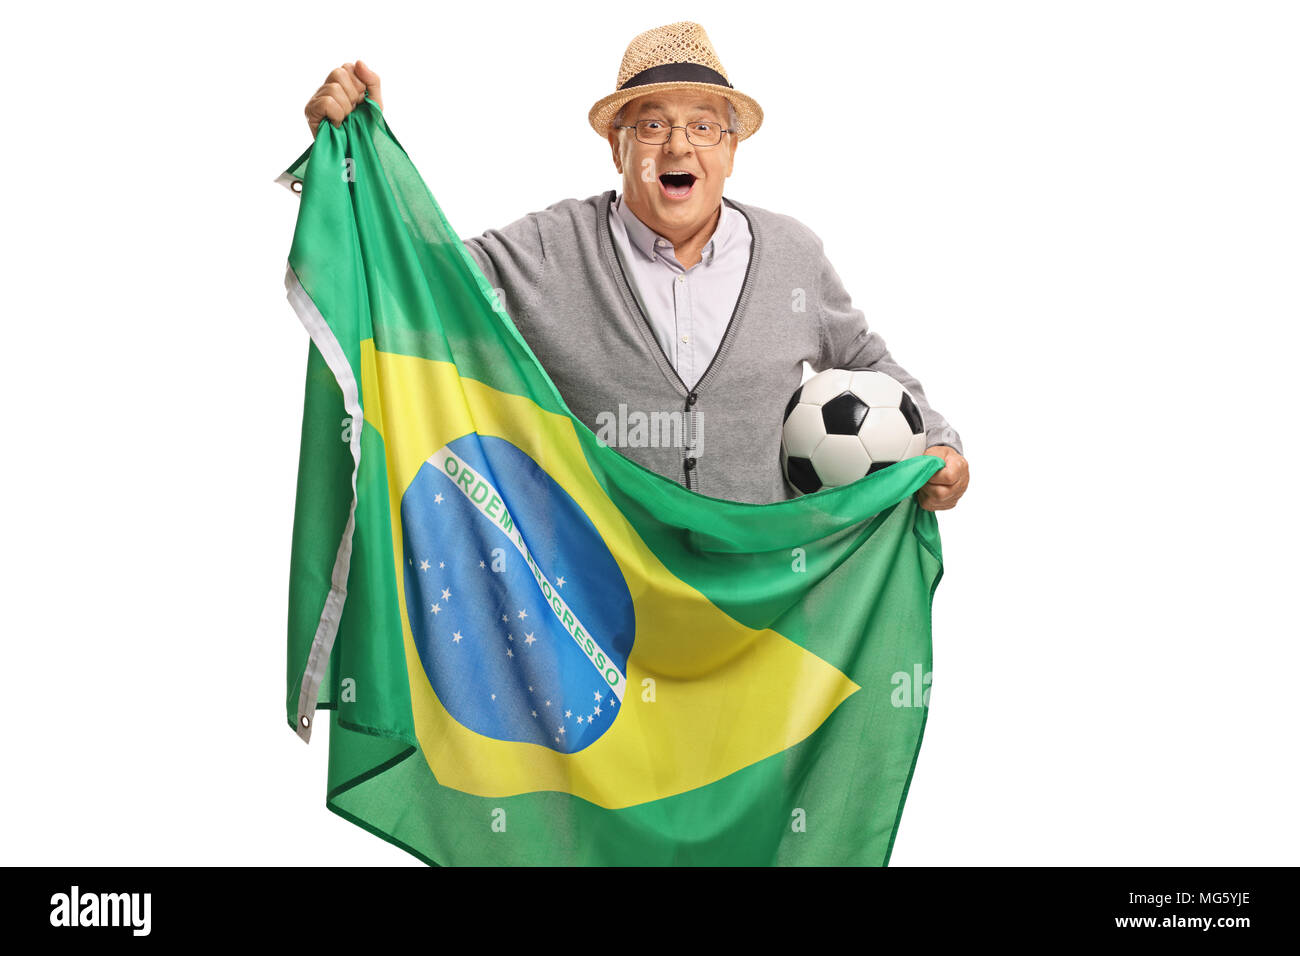 Personnes âgées excité holding a football fan de foot et un drapeau brésilien isolé sur fond blanc Banque D'Images